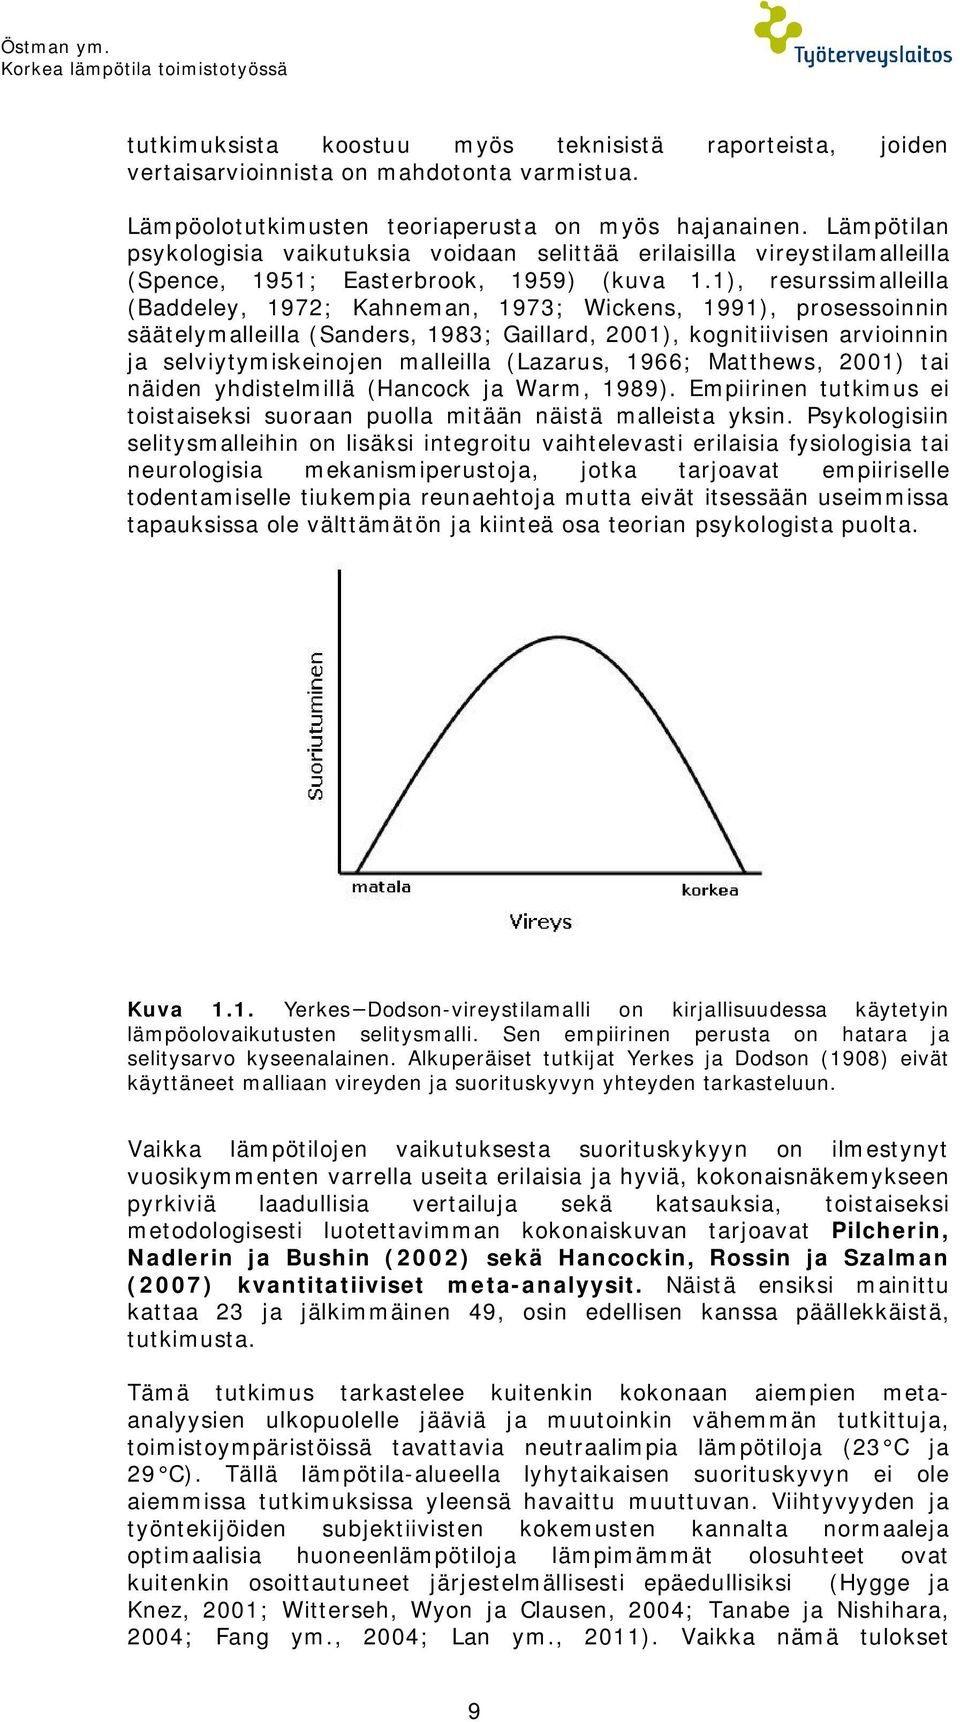 1), resurssimalleilla (Baddeley, 1972; Kahneman, 1973; Wickens, 1991), prosessoinnin säätelymalleilla (Sanders, 1983; Gaillard, 2001), kognitiivisen arvioinnin ja selviytymiskeinojen malleilla